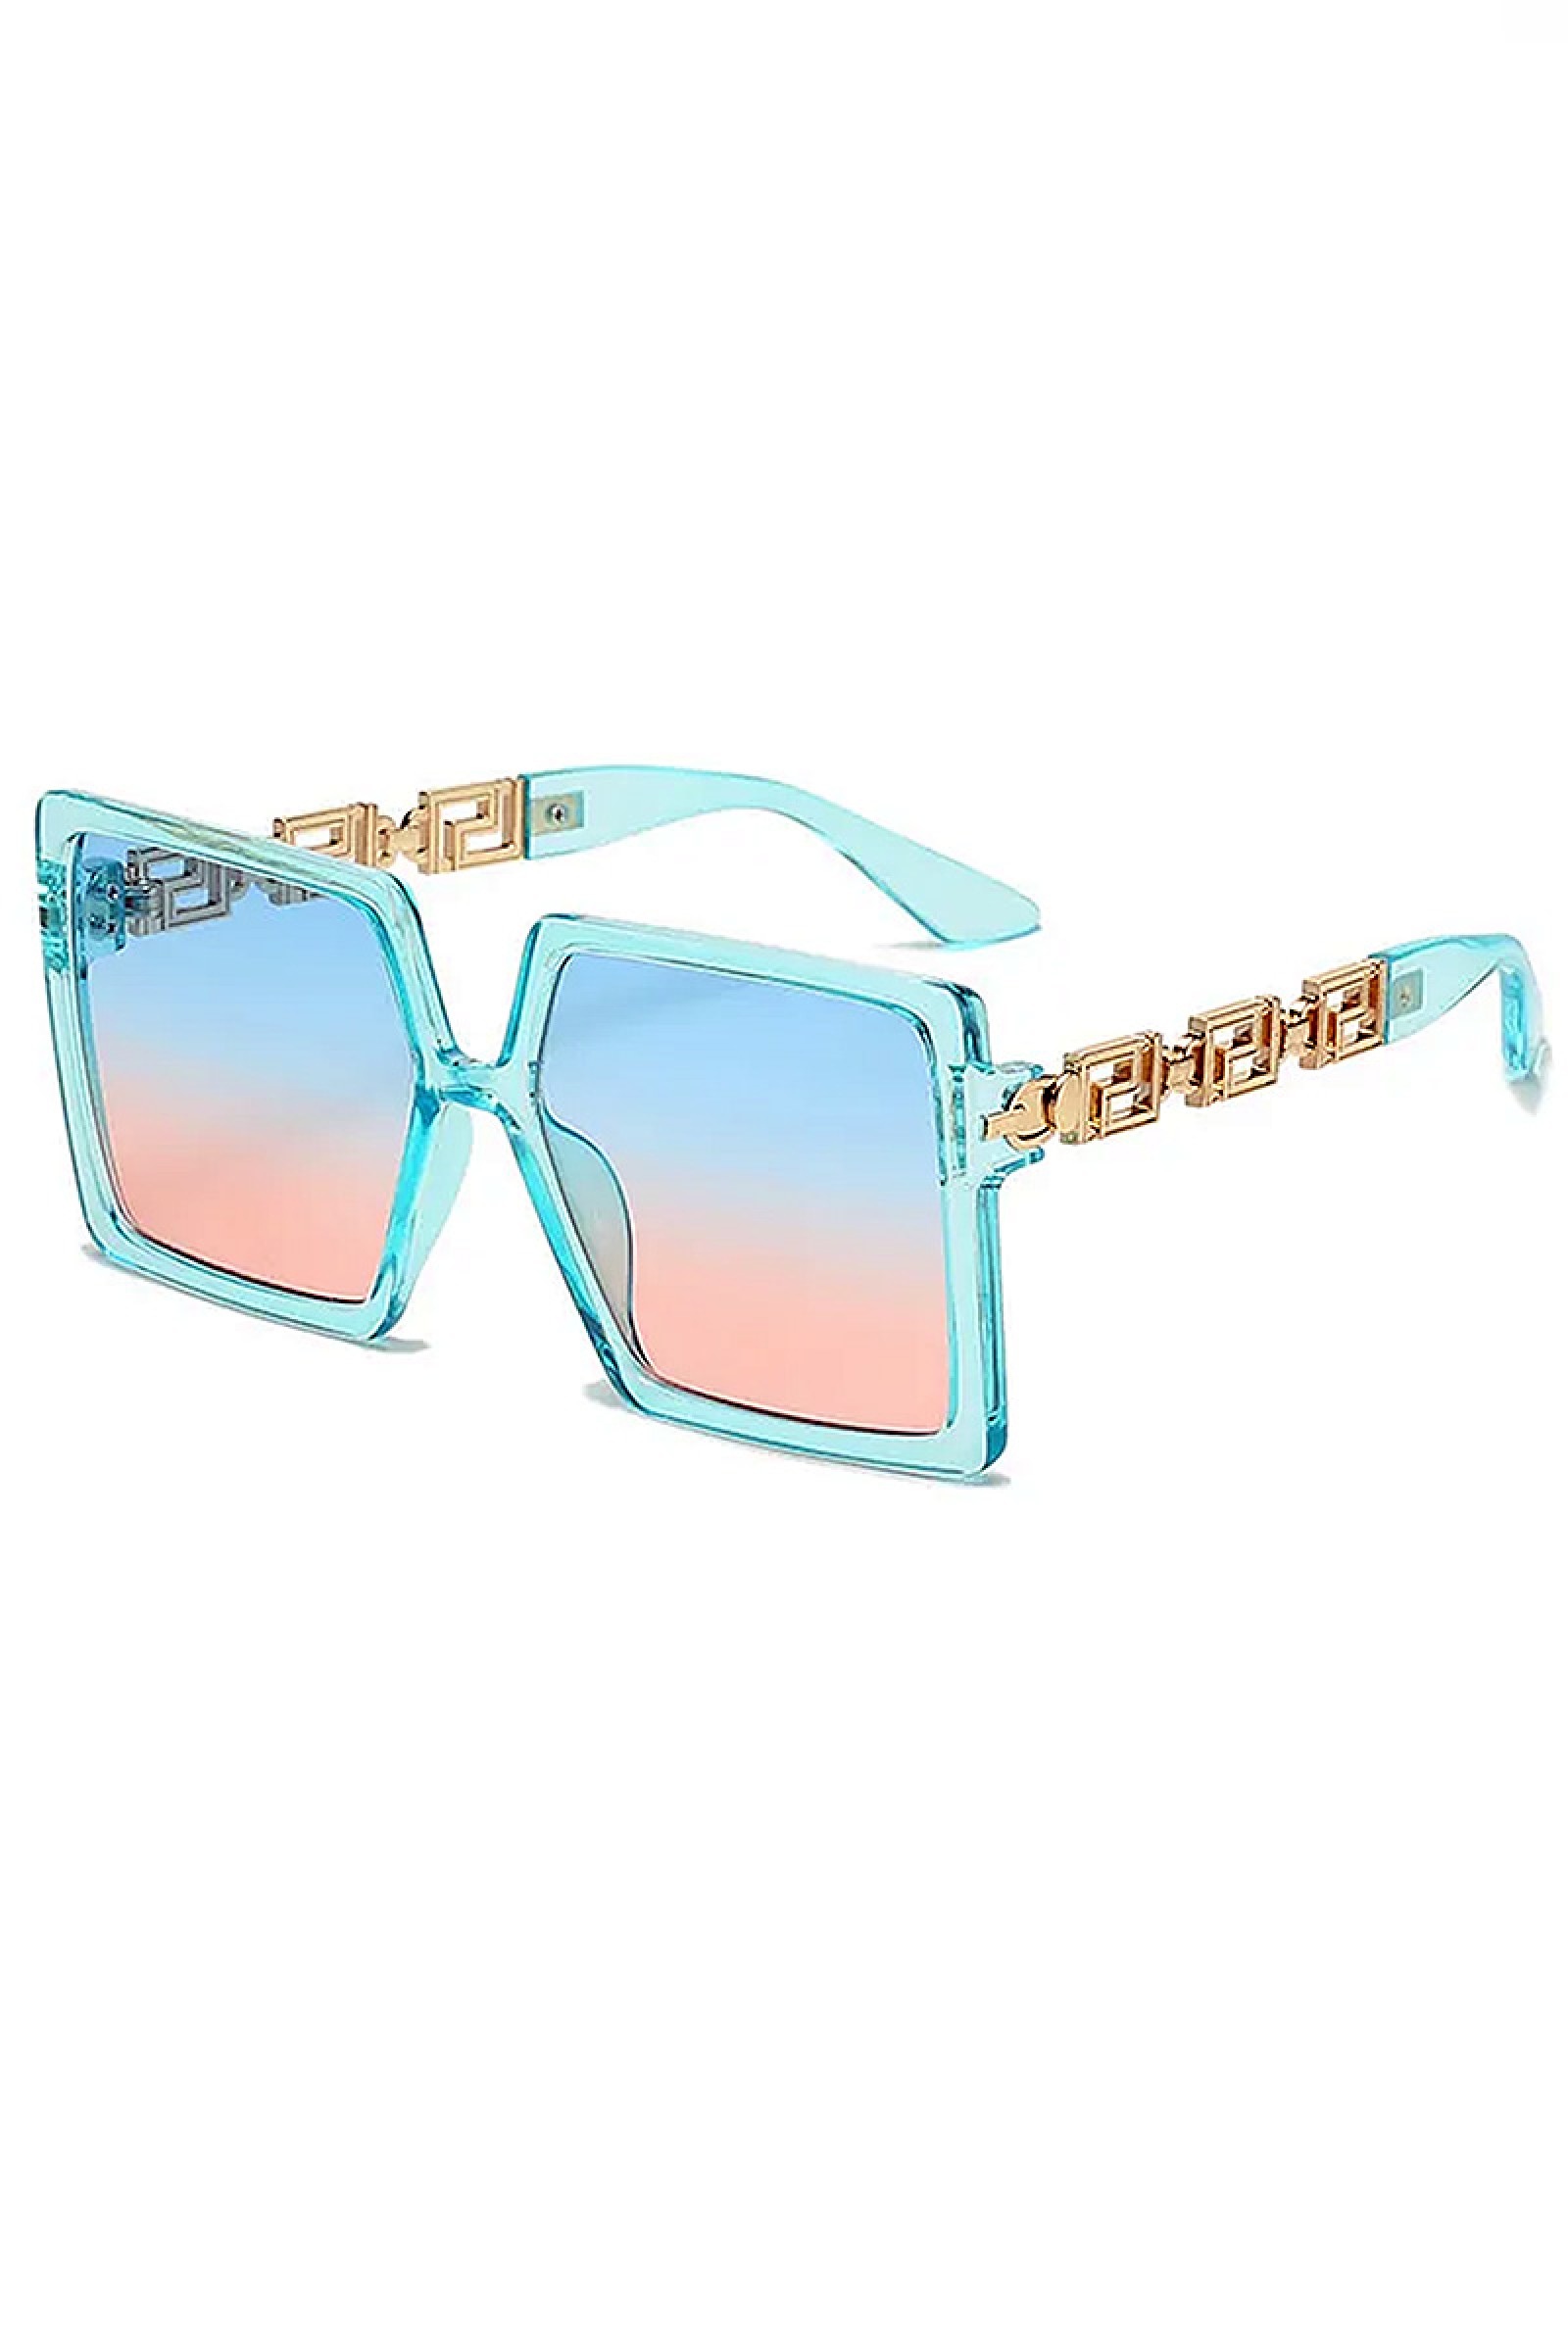 Γυαλιά ηλίου - Γαλάζιο Σκελετό Χρυσή Βραχίονες Και Δίχρωμους Φακούς